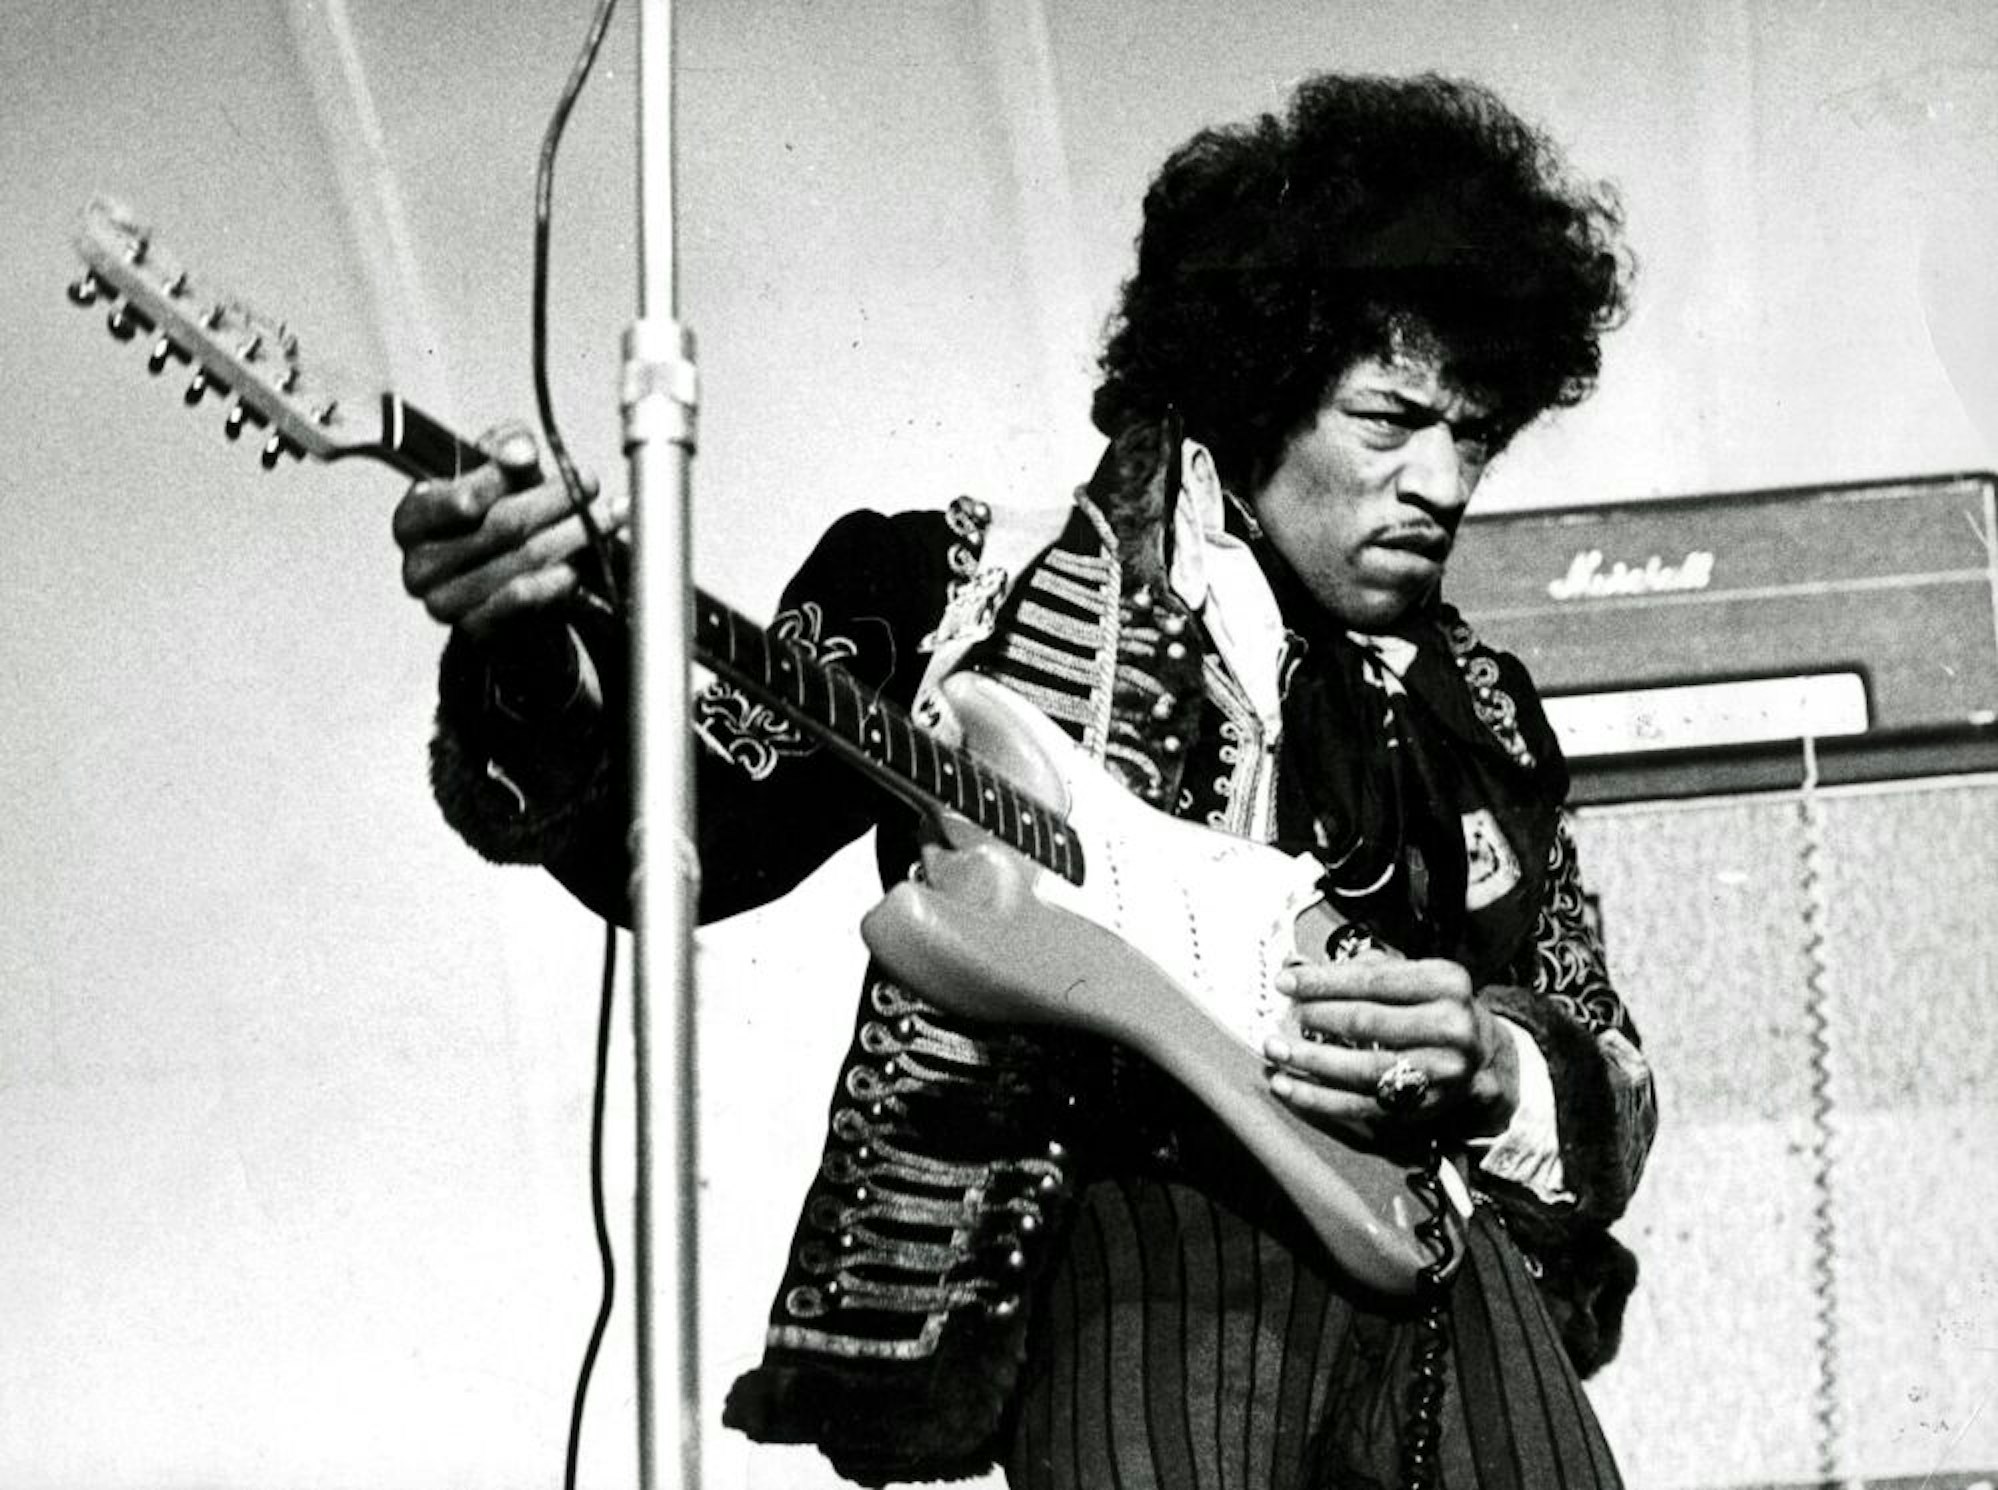 Die Themenvielfalt beim "Stichtag" ist groß: Erinnert wird zum Beispiel an Jimi Hendrix’ 50. Todestag.